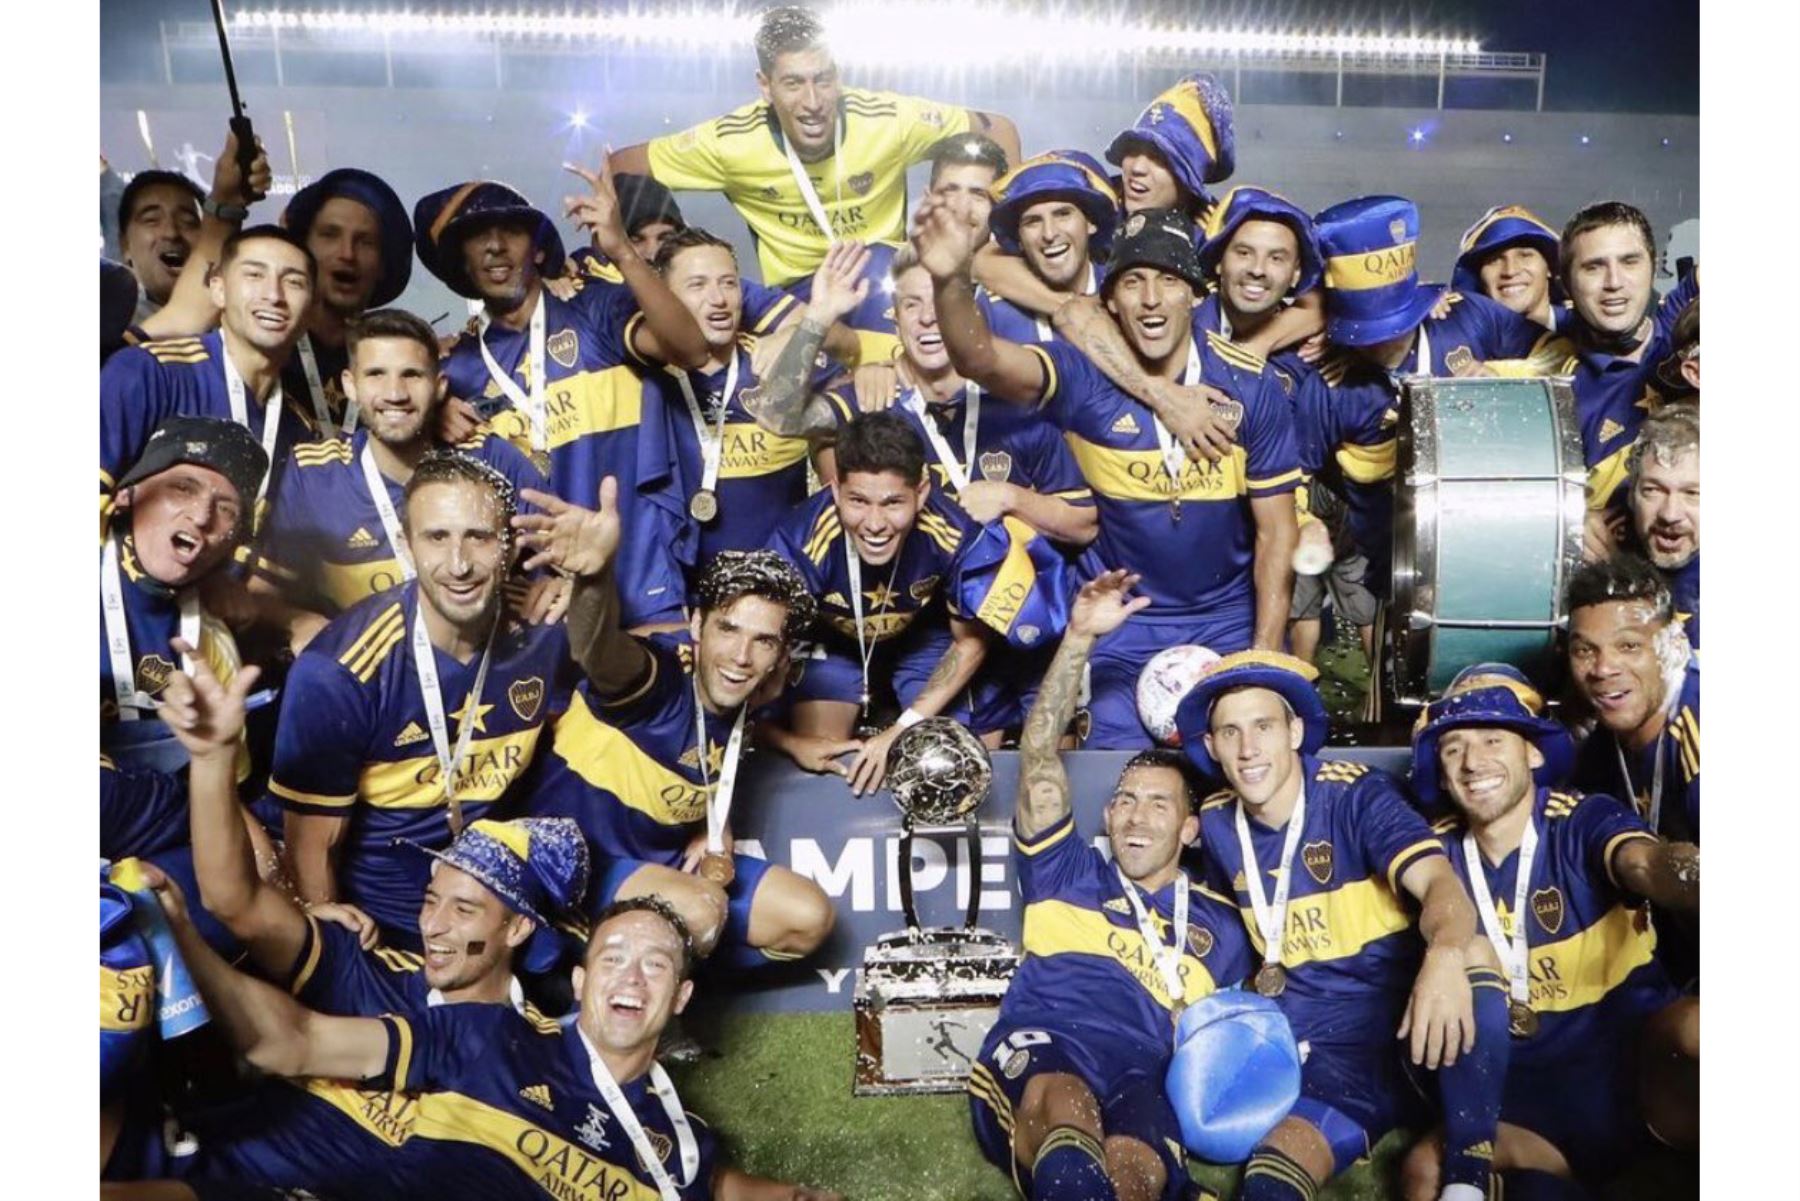 Carlos Zambrano fue uno de los artífices para que Boca Juniors logre su título número 70 de su historia luego que ayer derrotó por penales 5-3 al Banfield, después de igualar 1-1 en la final. Foto: Twitter/@5zambranocz